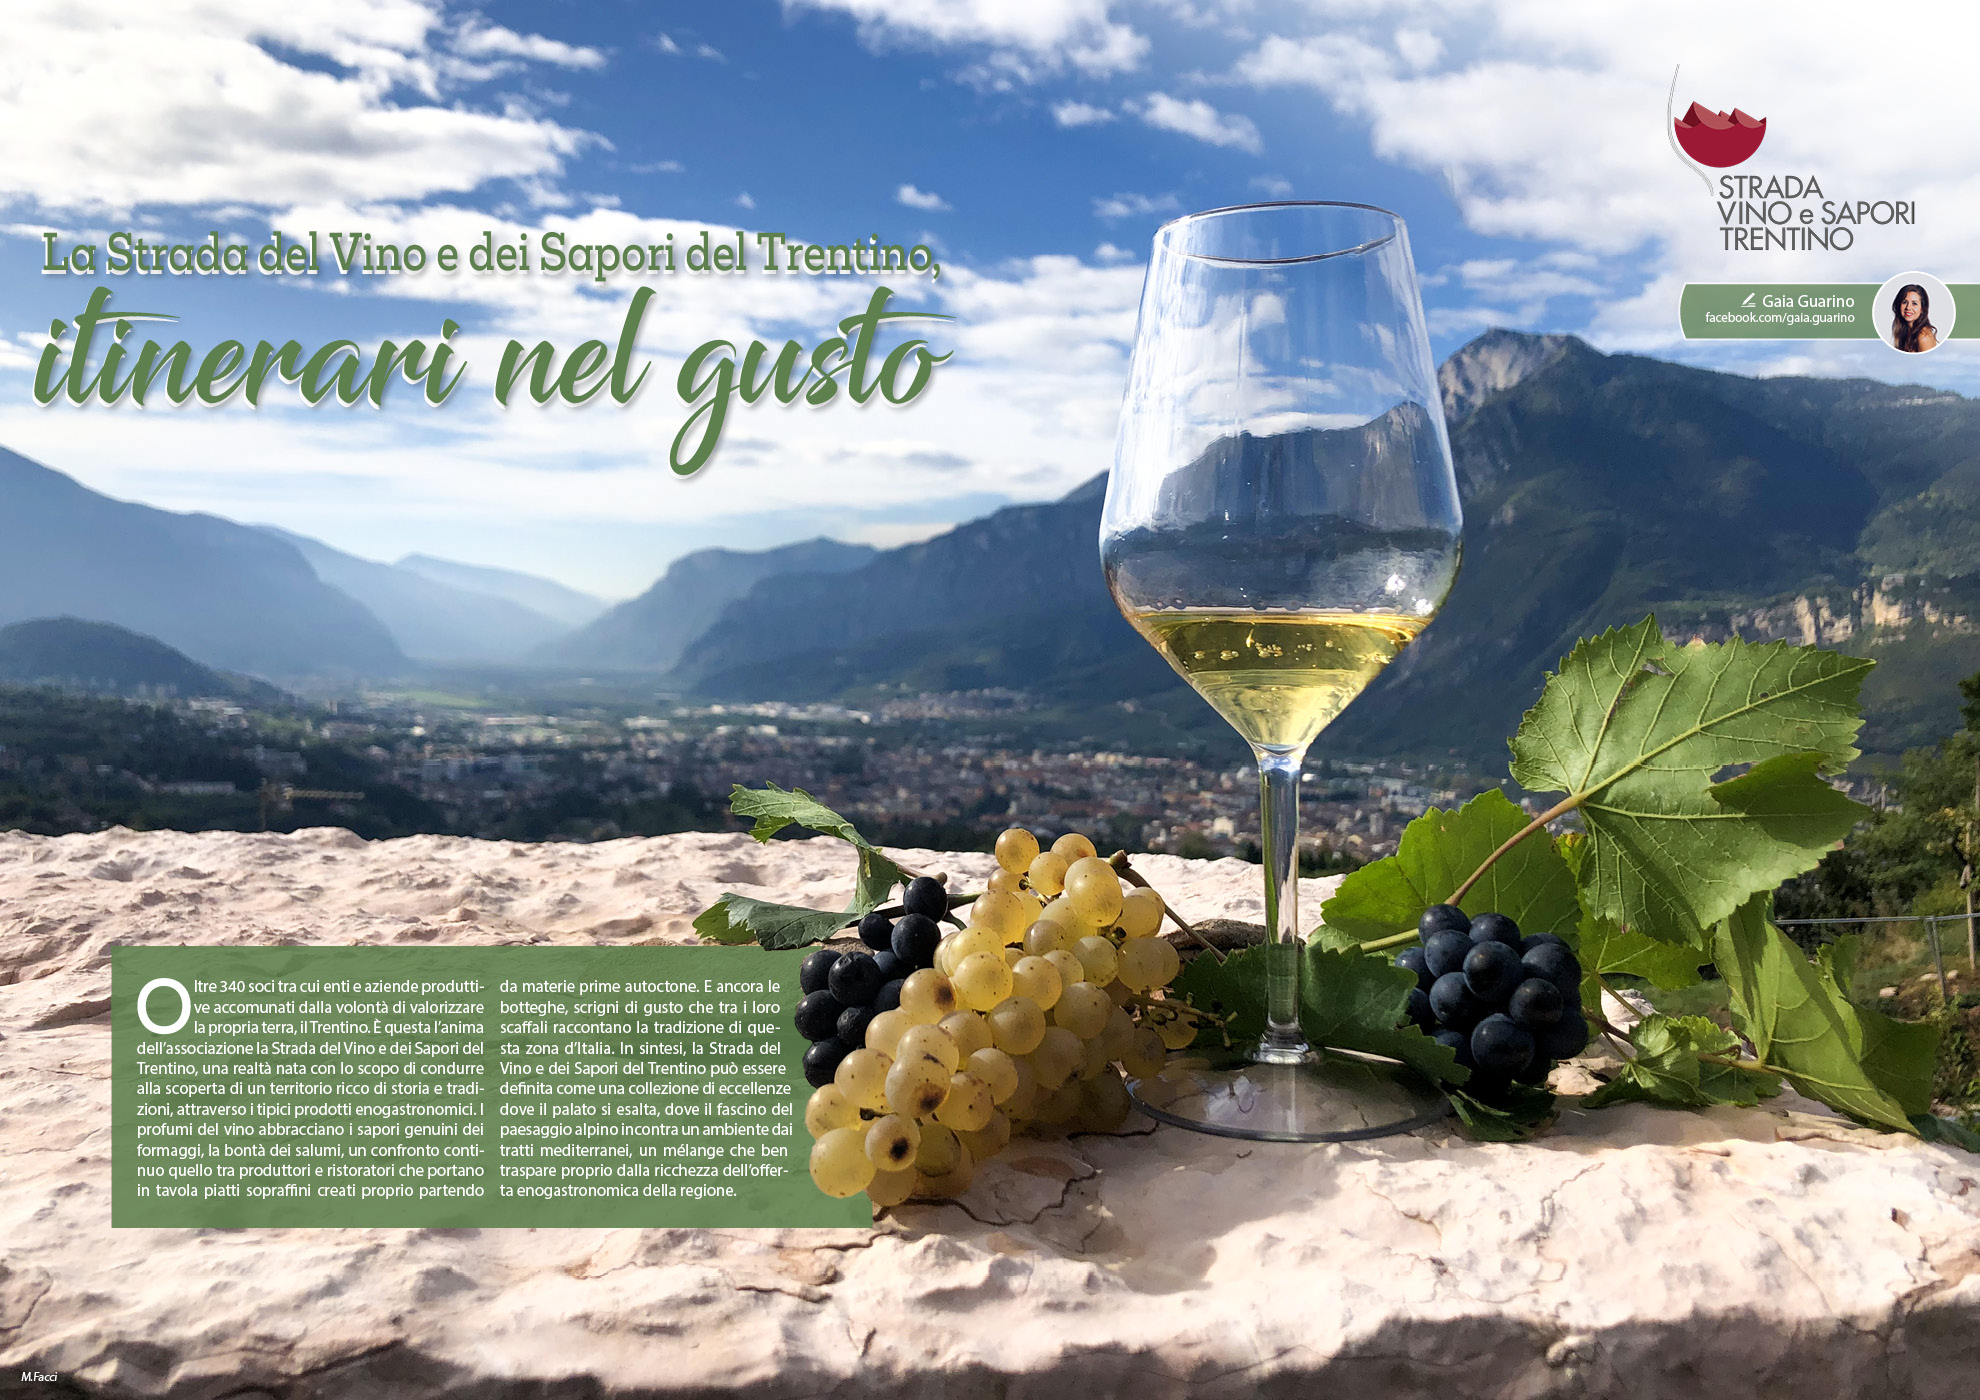 e-borghi travel 34: Speciale borghi di fiume - La Strada del Vino e dei Sapori del Trentino, itinerari nel gusto